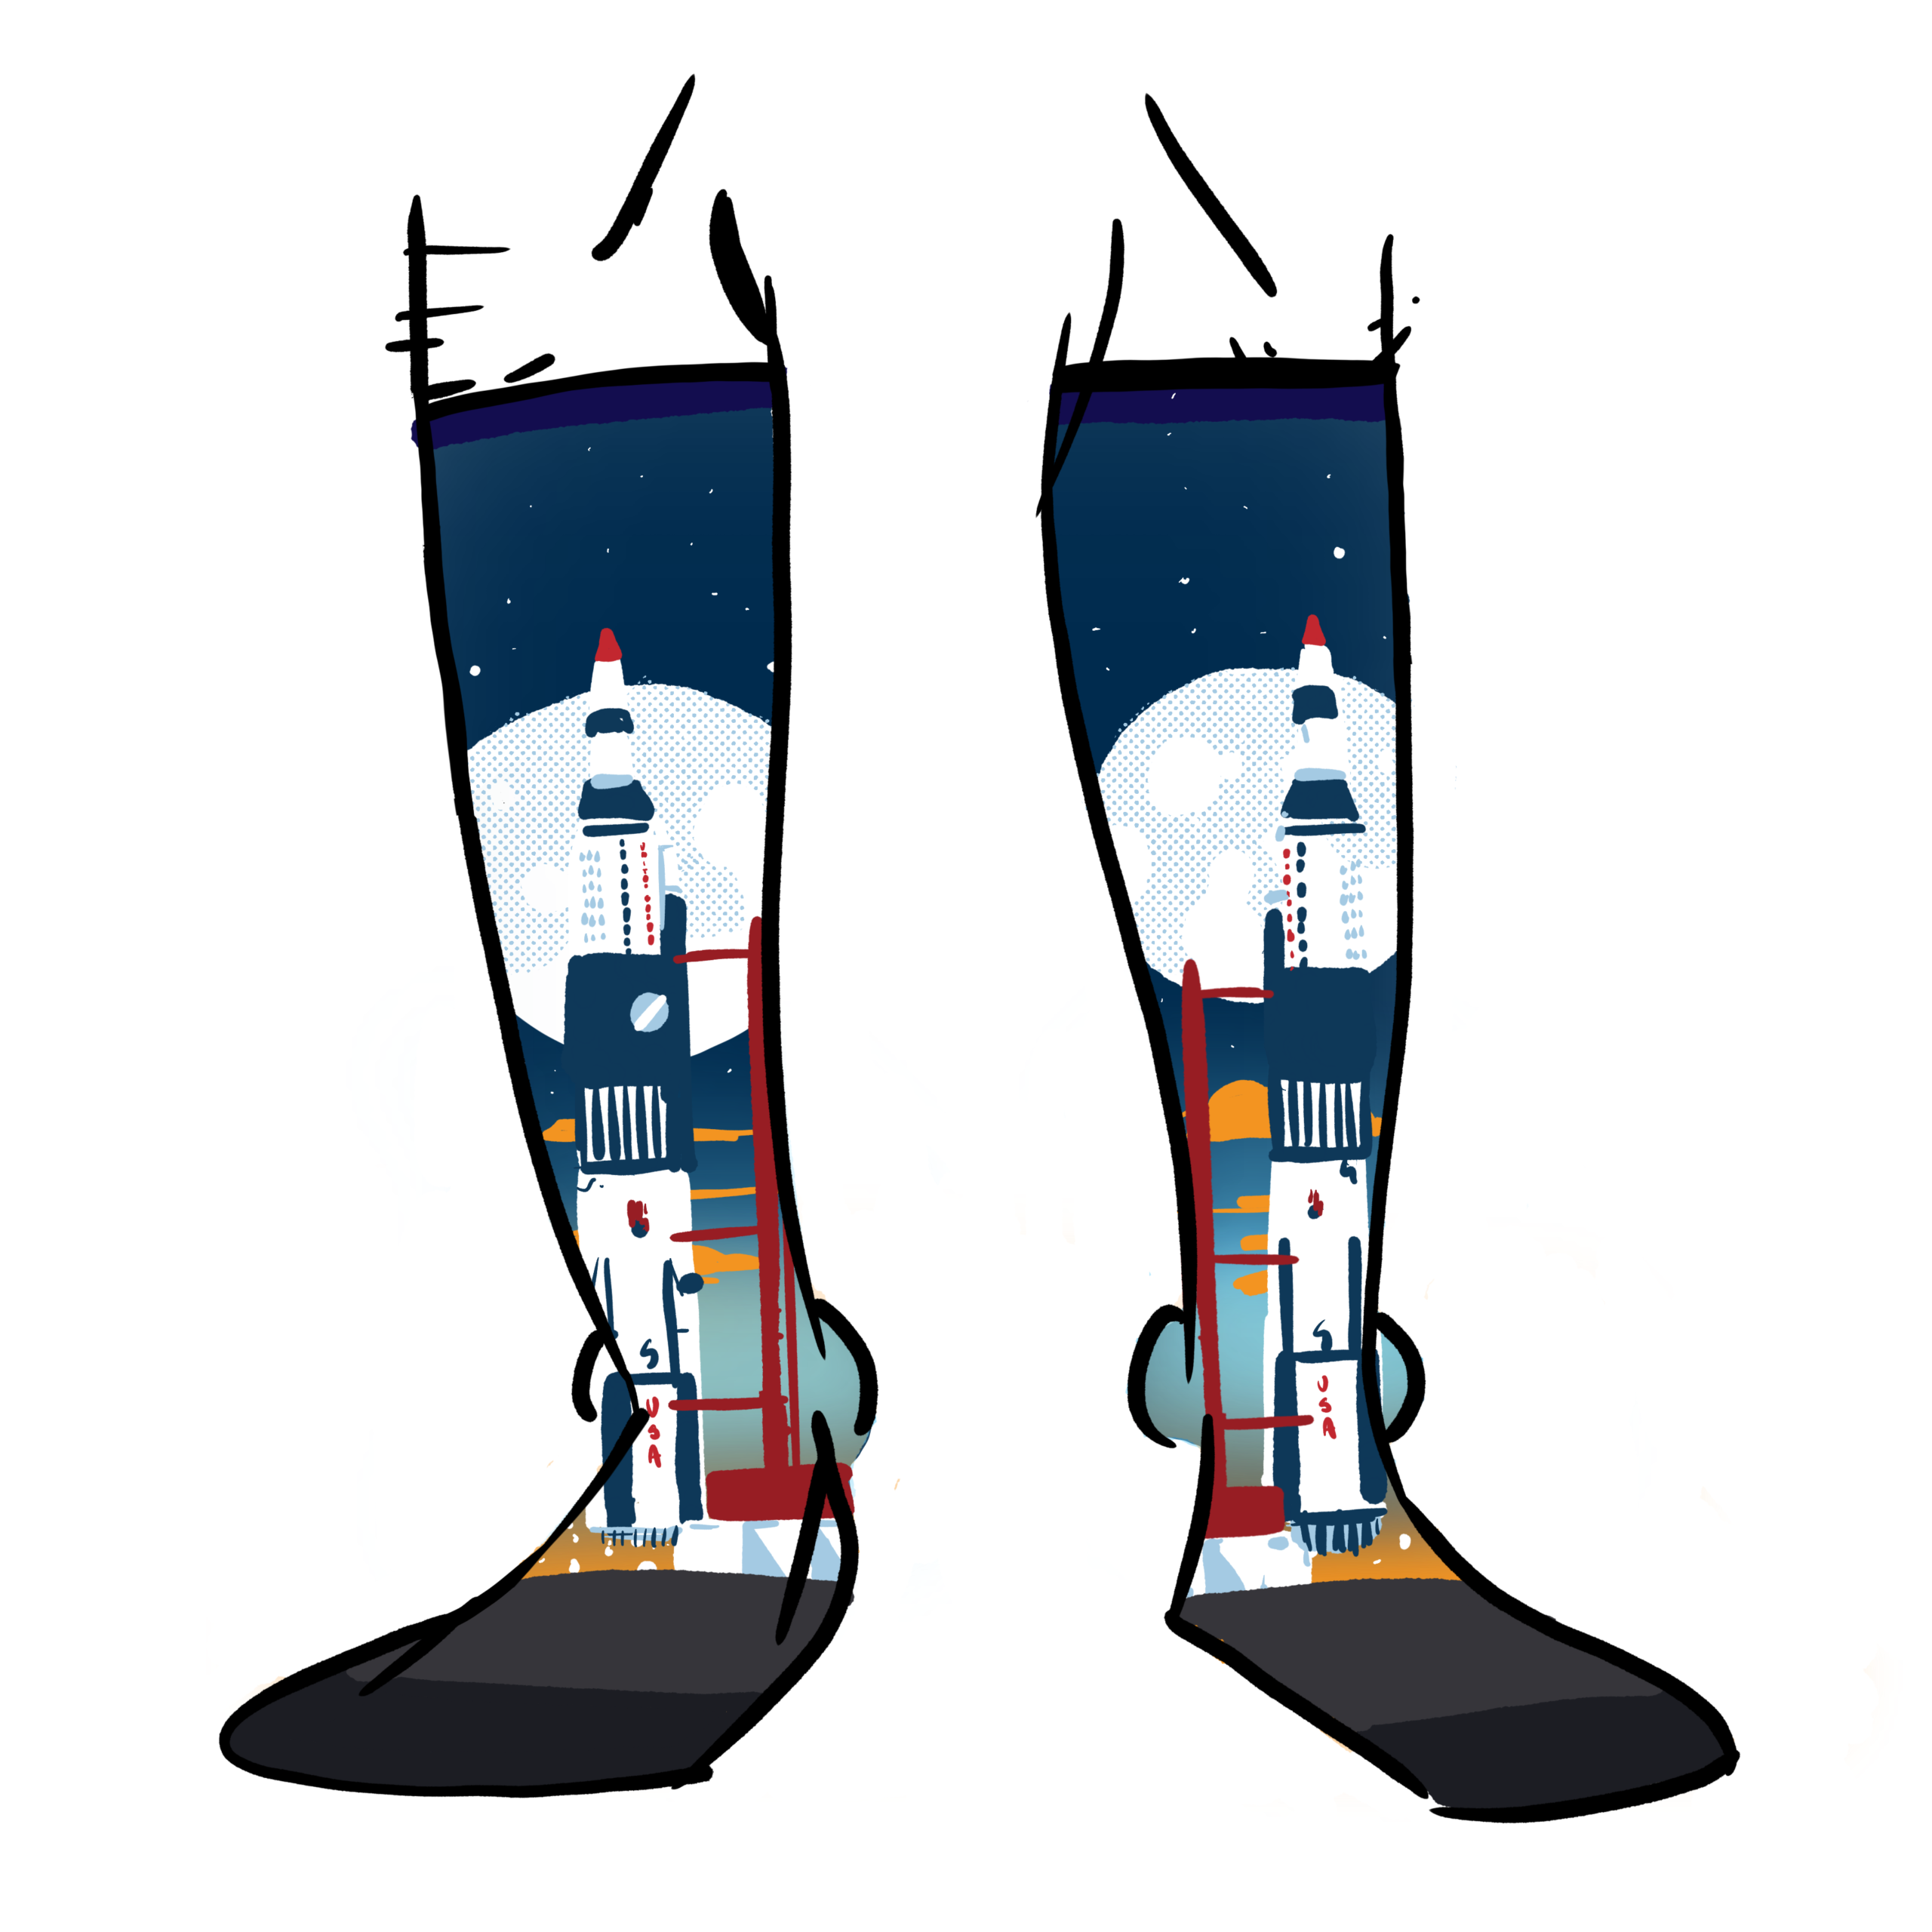 The Saturn 5 rocket printed on socks